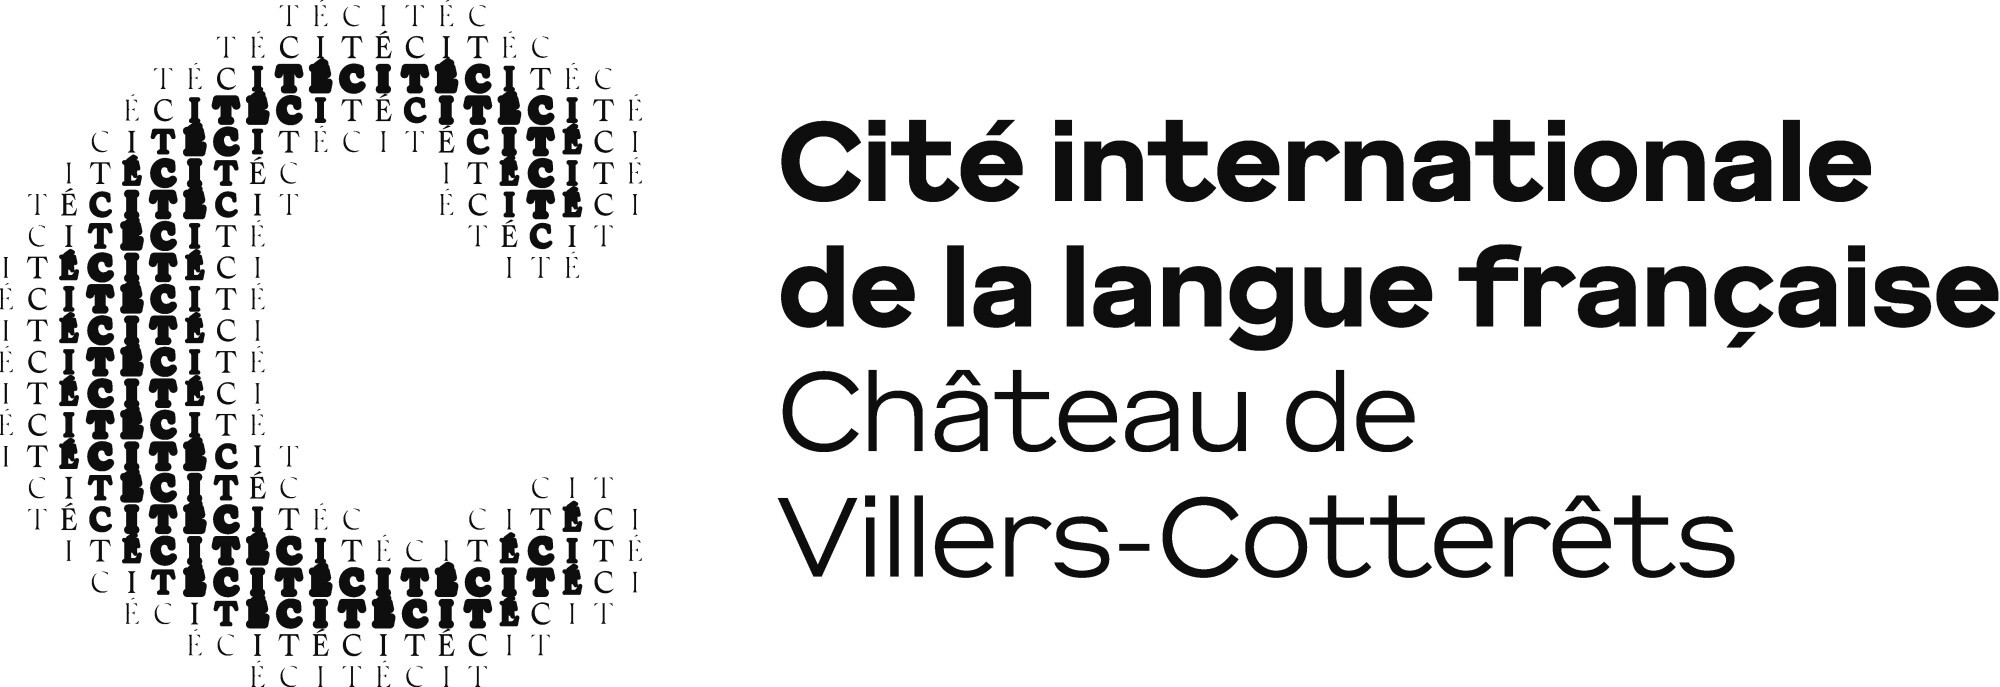 Villers-Cotterêts